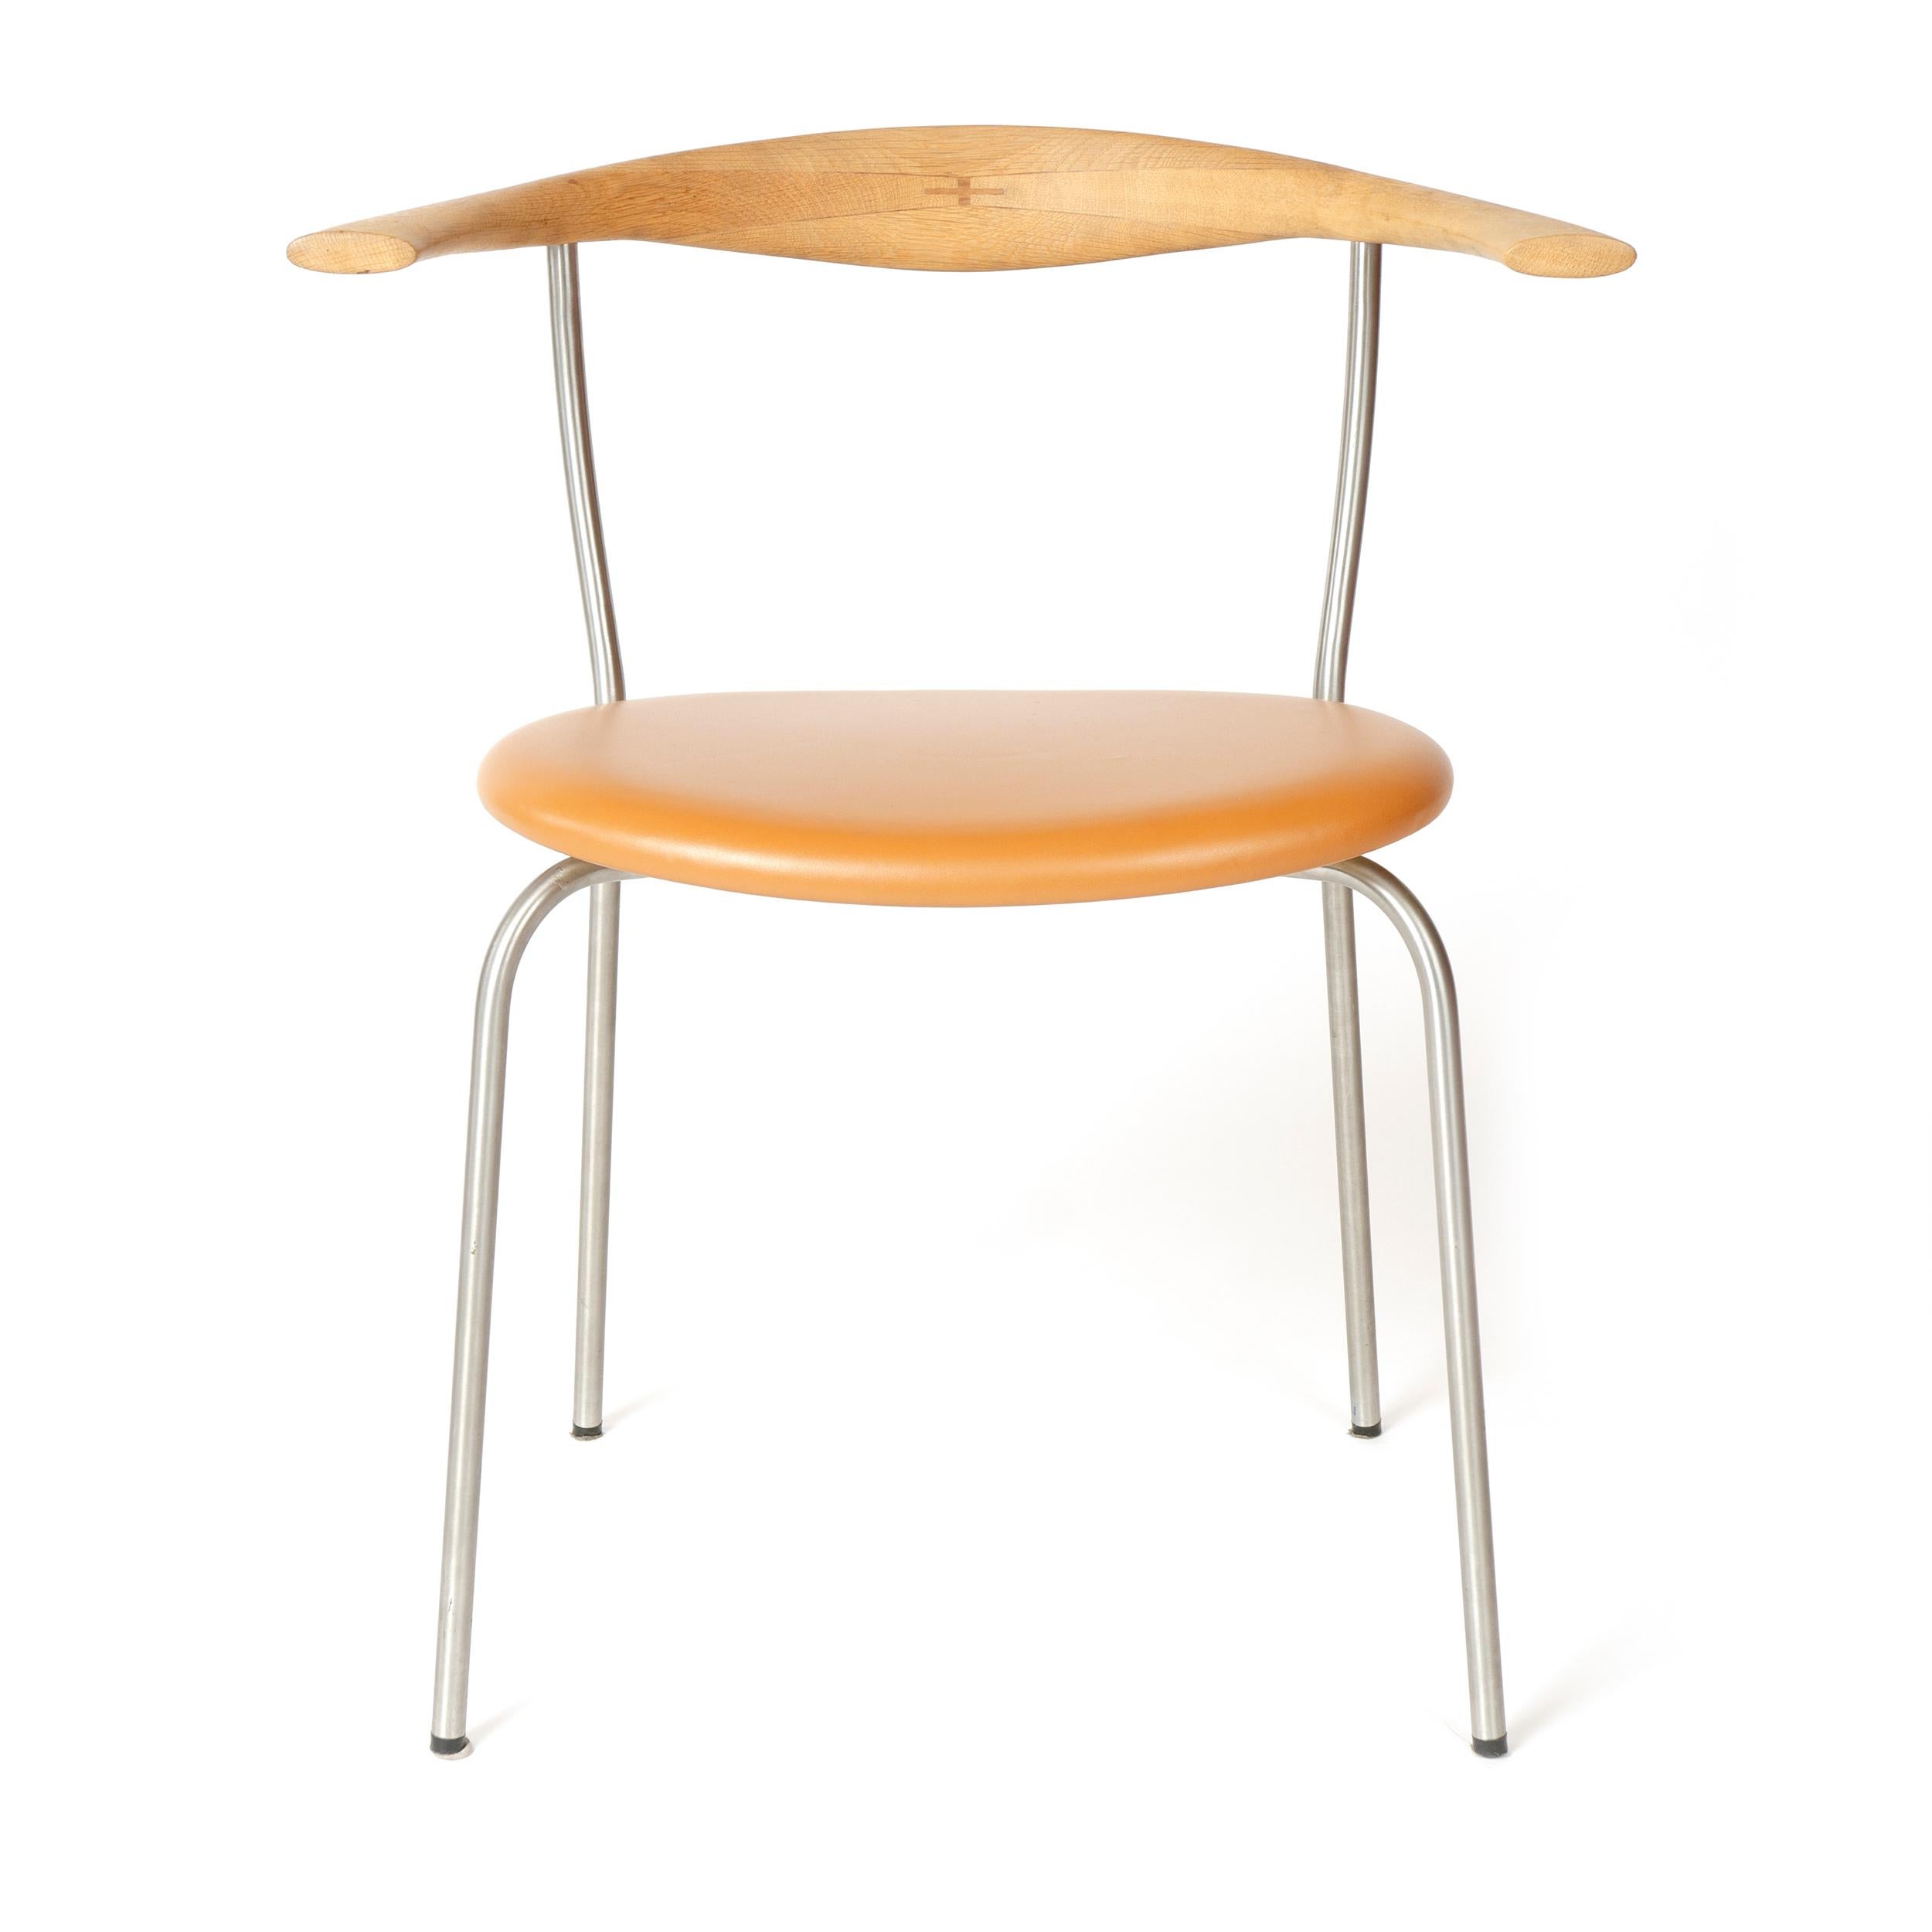 Danish Scandinavian Modern Model 701 Minimal Chair by Hans J. Wegner for PP Mobler